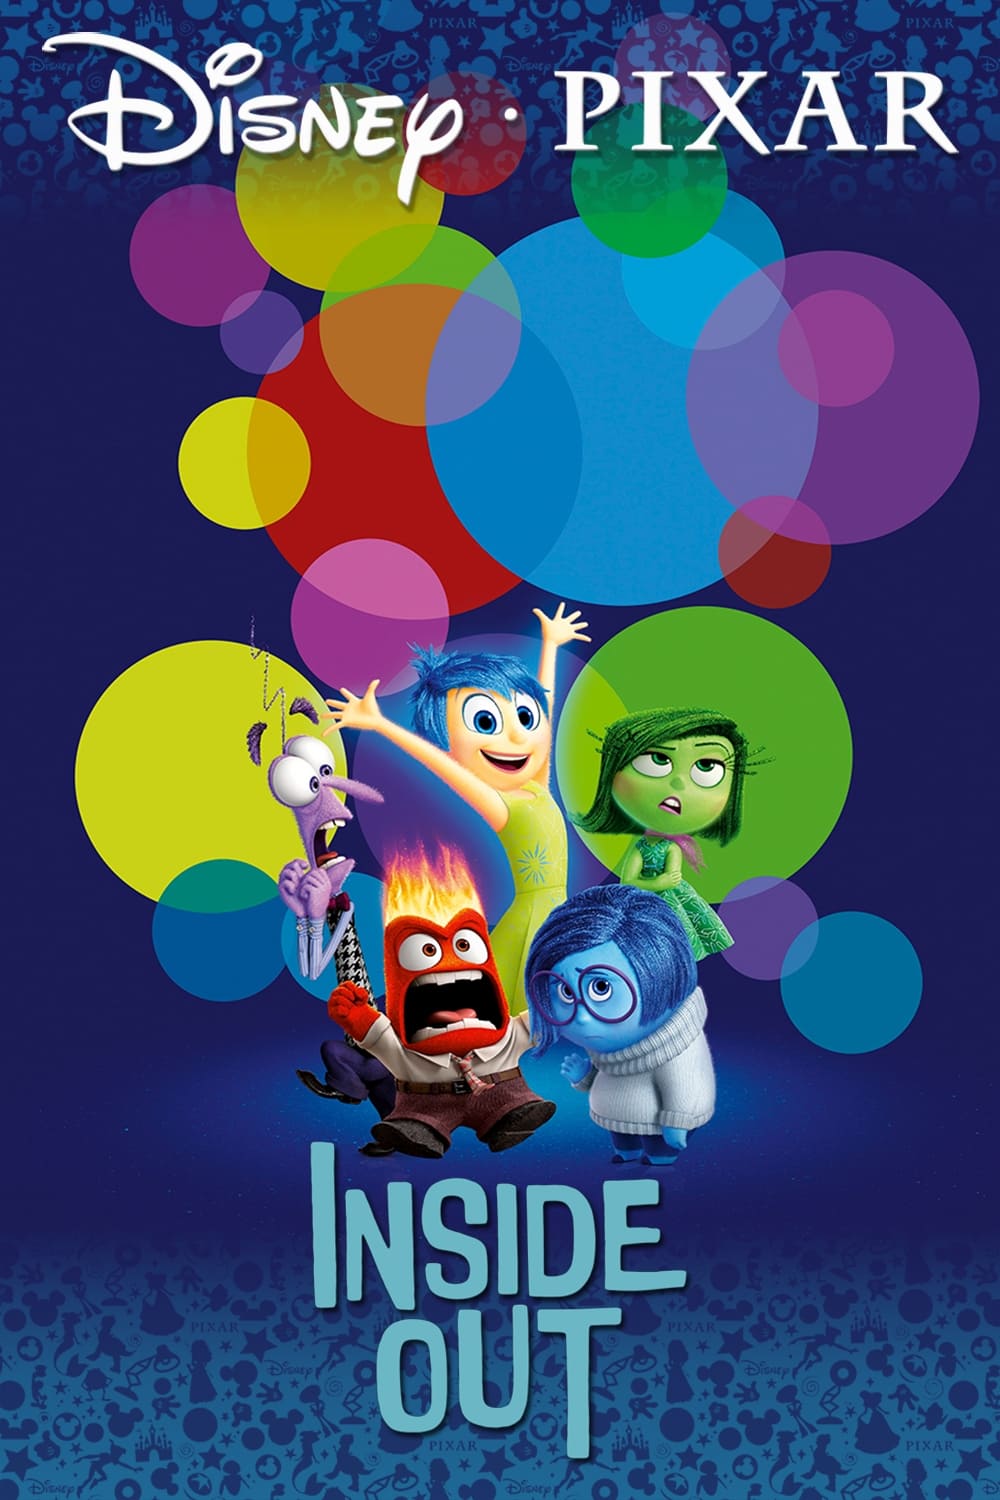 ดูหนังออนไลน์ฟรี Inside Out 2015 มหัศจรรย์อารมณ์อลเวง movie678